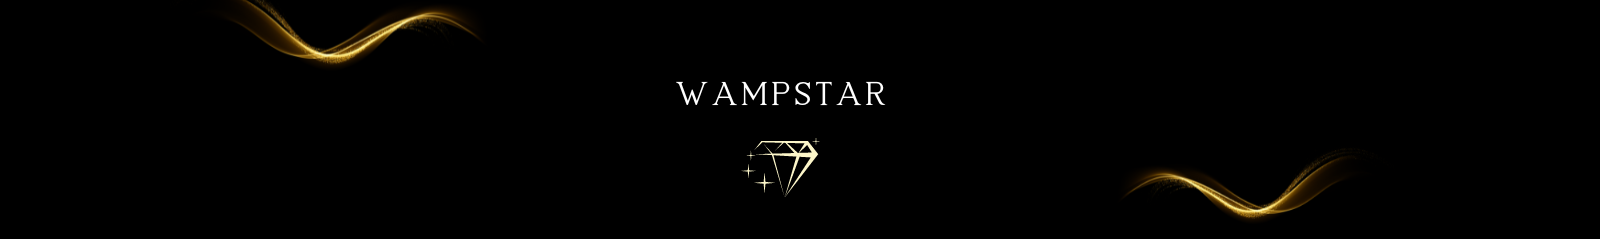 Wampstar